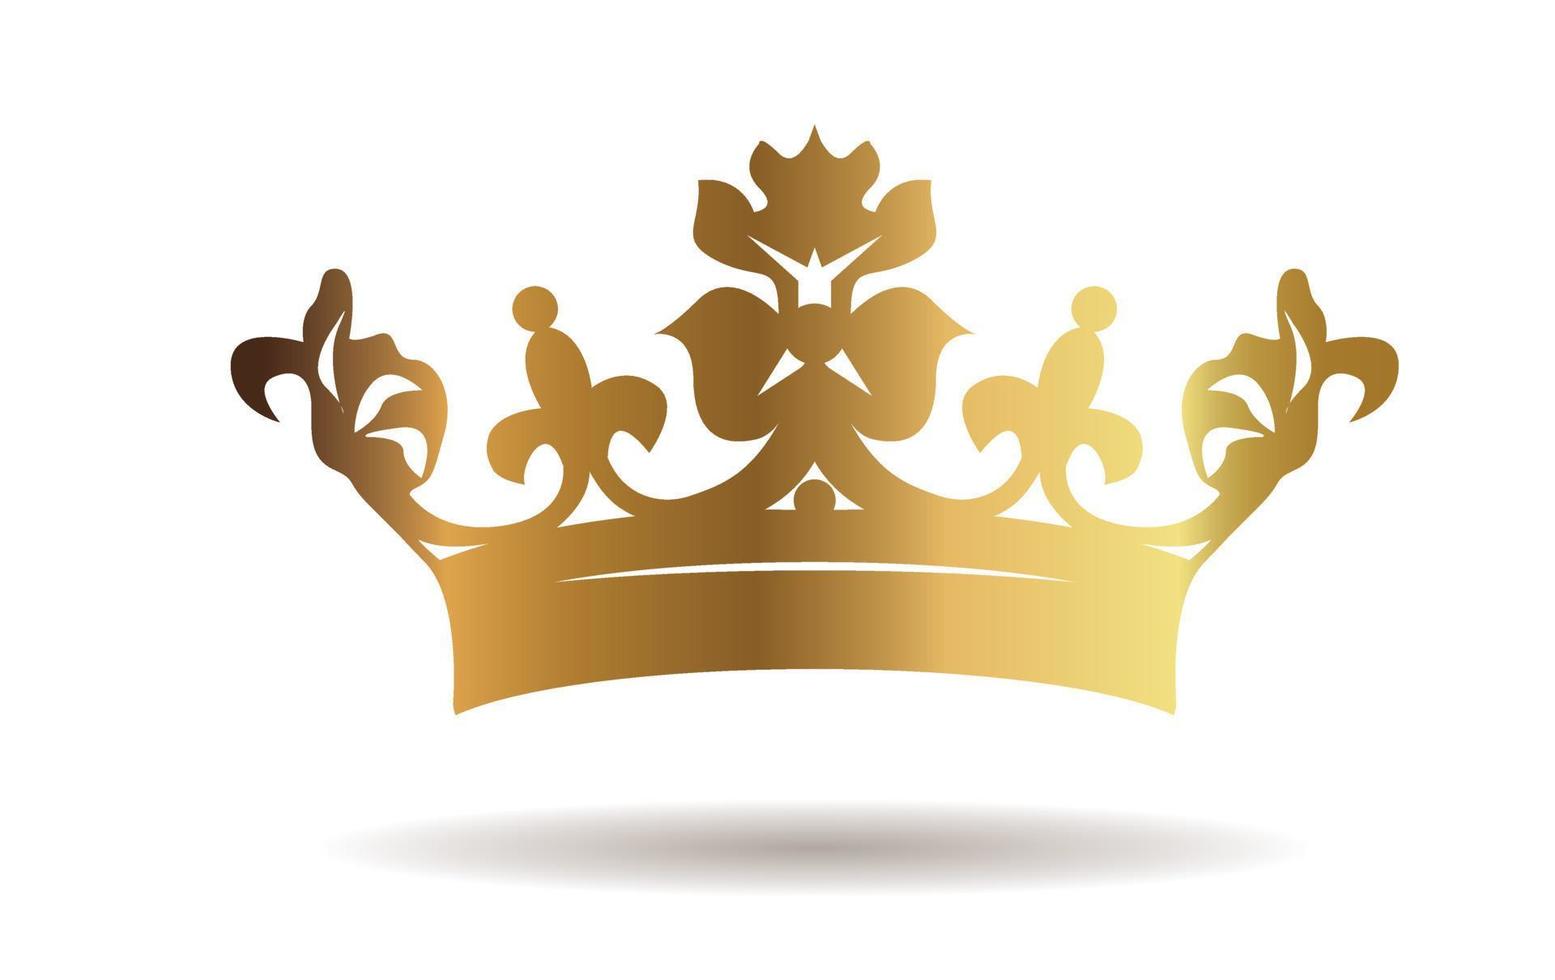 Vektor golden König Krone auf Weiß Hintergrund. Vektor Illustration. Emblem und königlich Symbole.